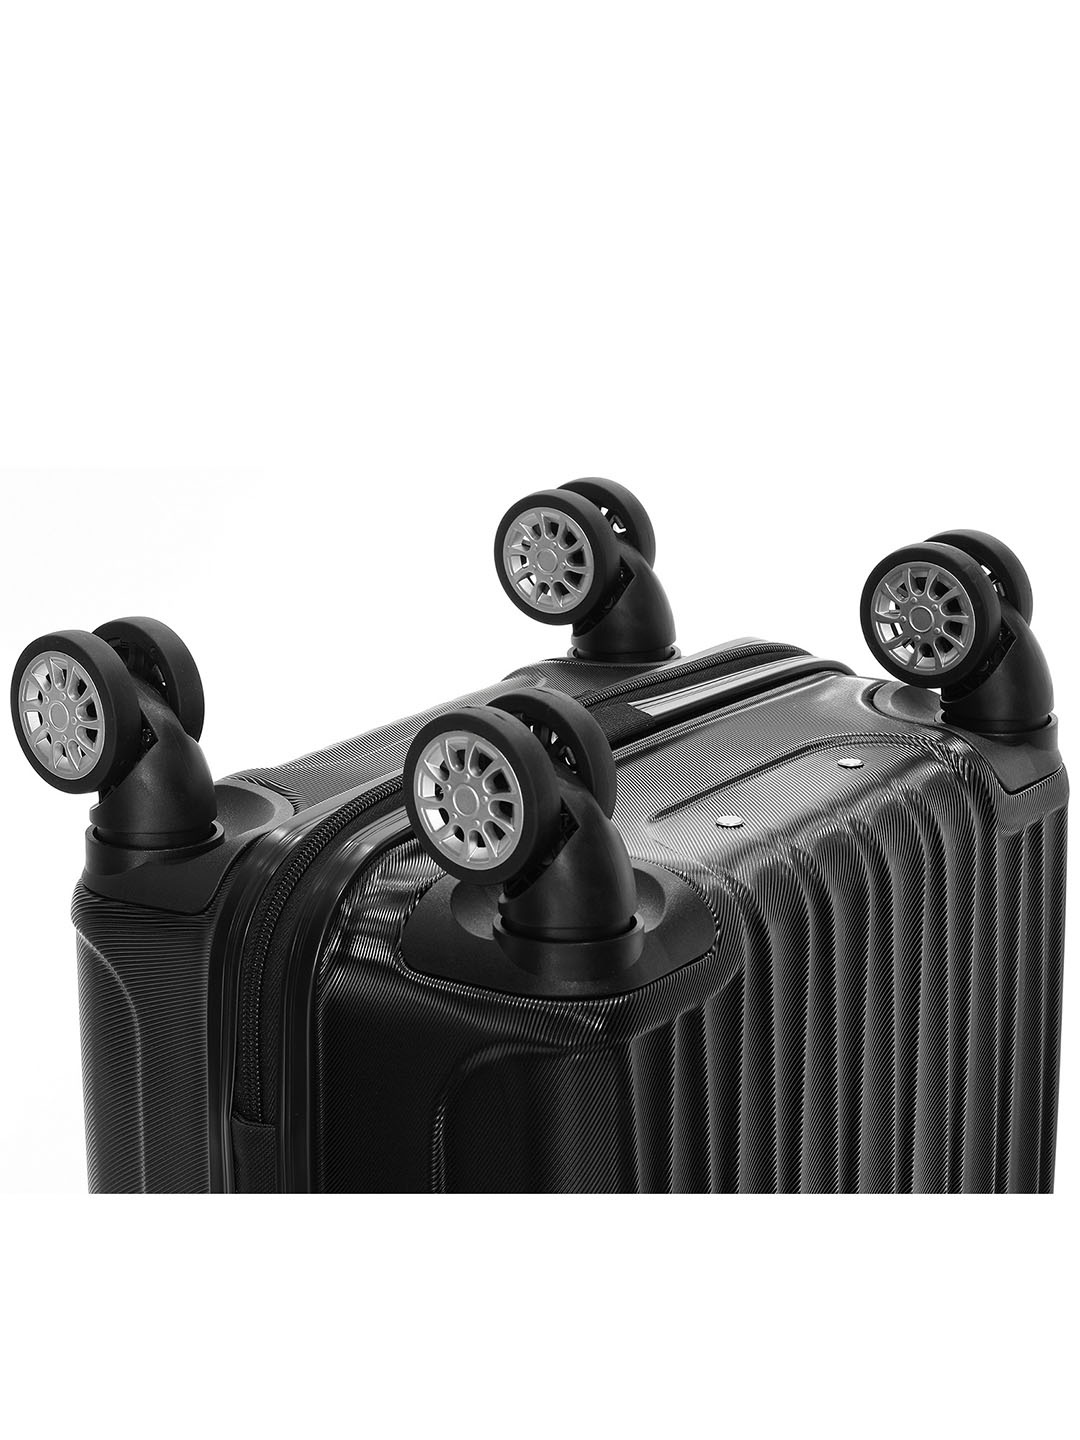 Фото Большой чемодан на колесах из рифленого ABS пластика черного цвета Чемоданы